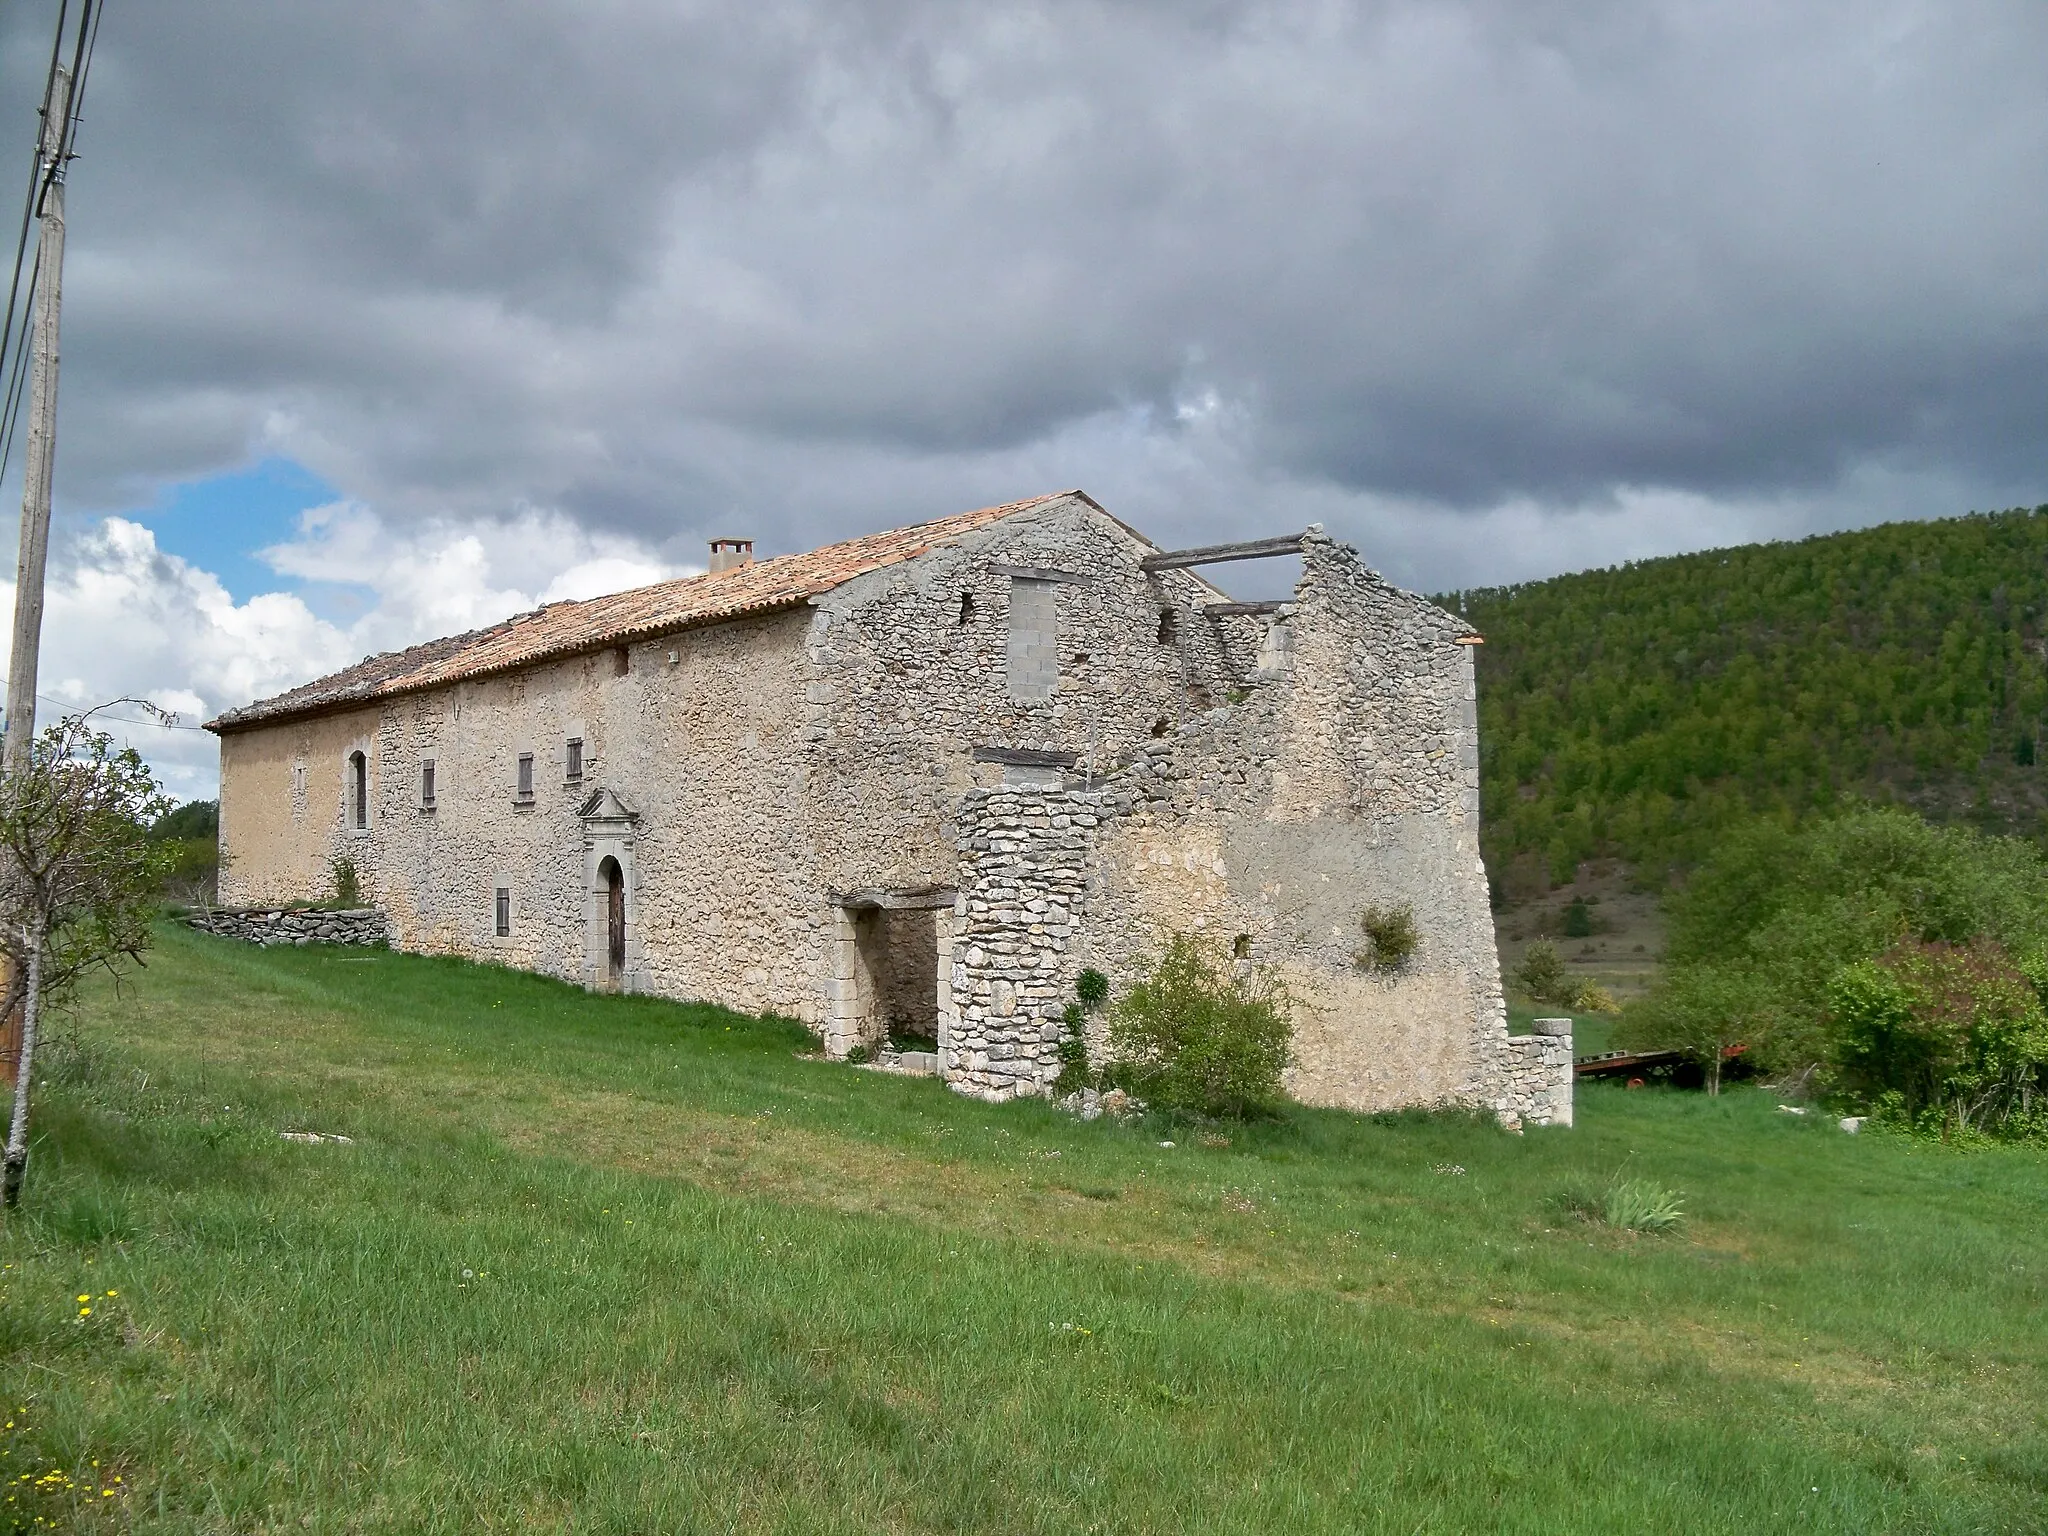 Photo showing: Maison à terre à Lagarde d'Apt, Vaucluse, France